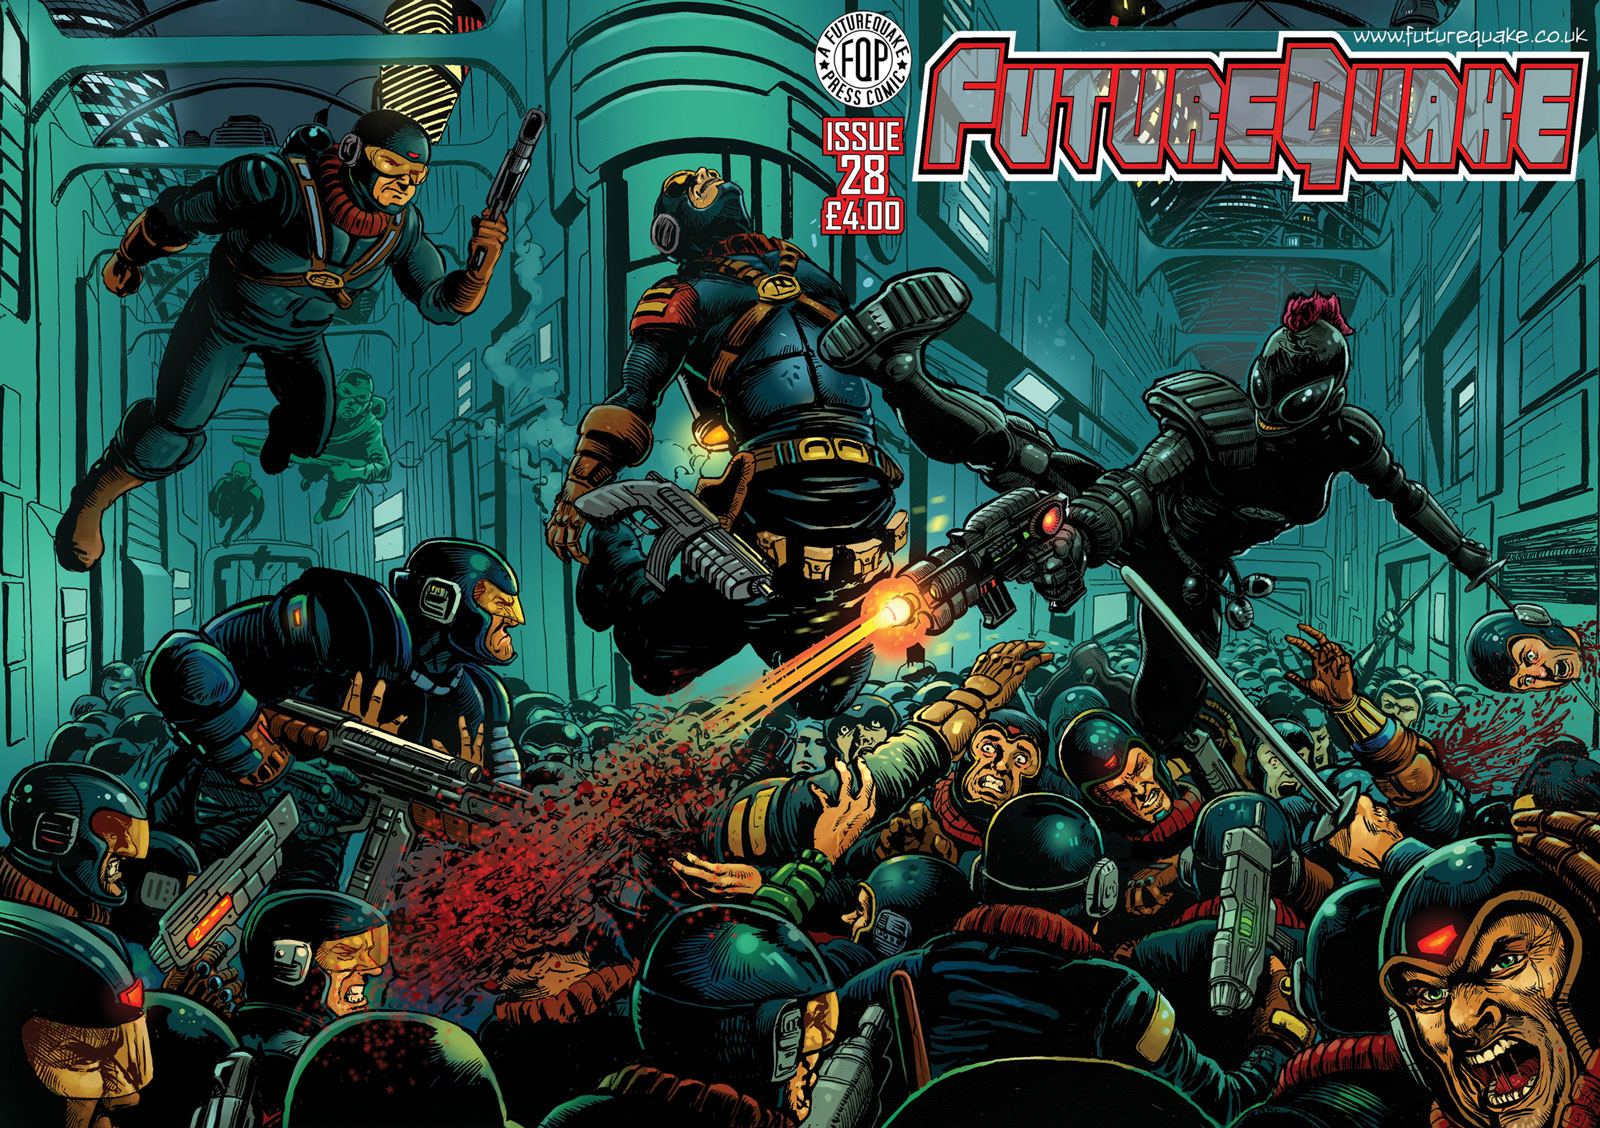 Future Quake Issue 28 - Wraparound Cover